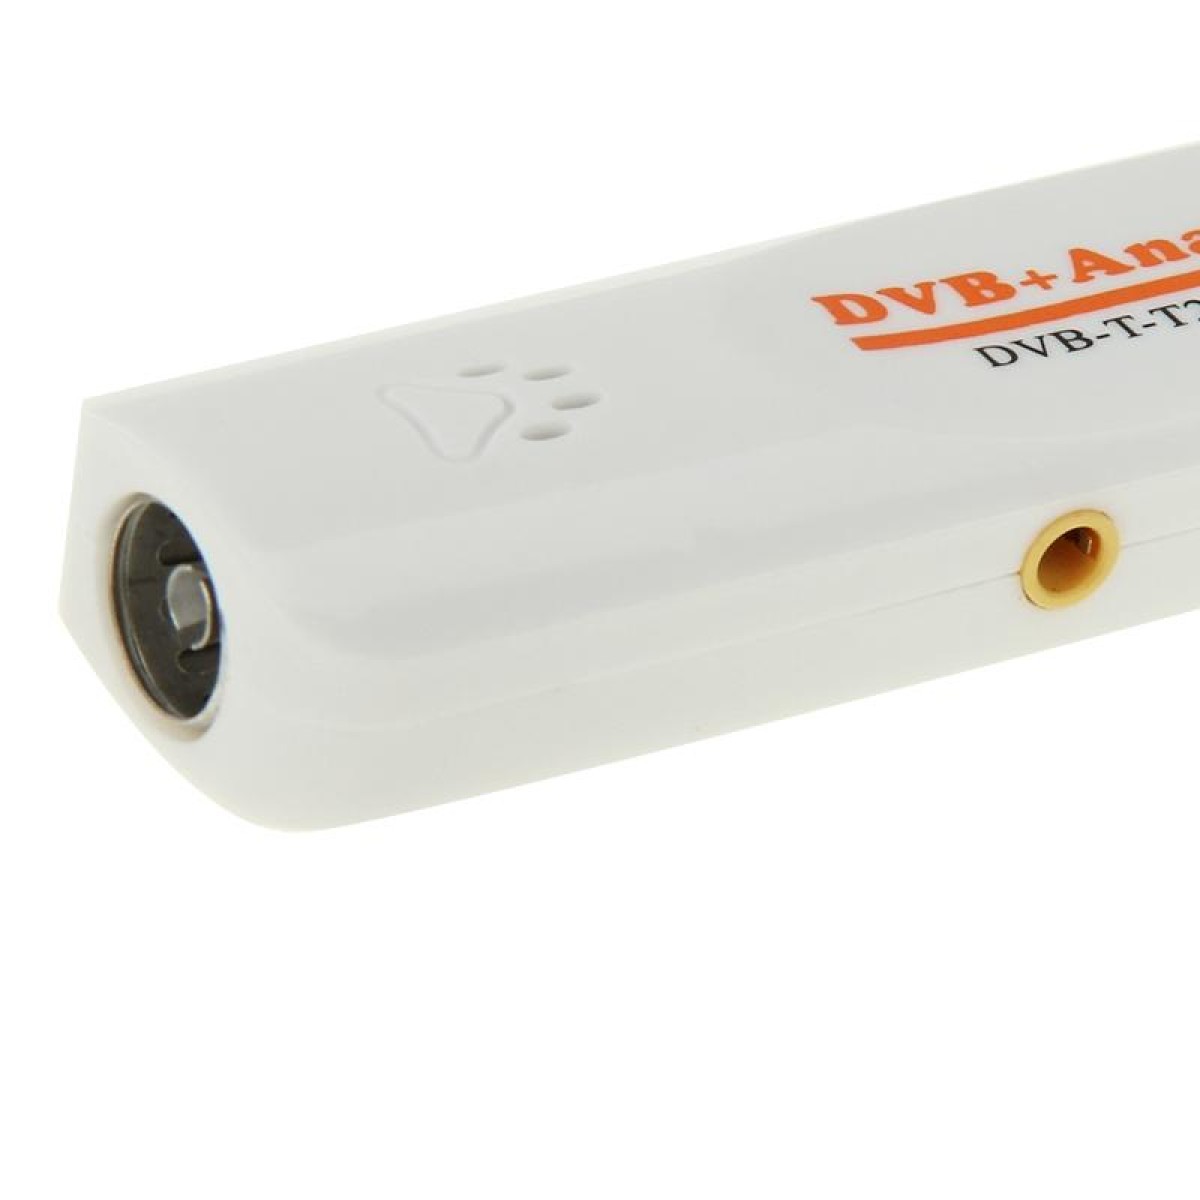 Mini Digital USB 2.0 Dual Module DVB Analog TV Stick, Support FM + AV + DVB-T / T2 / C